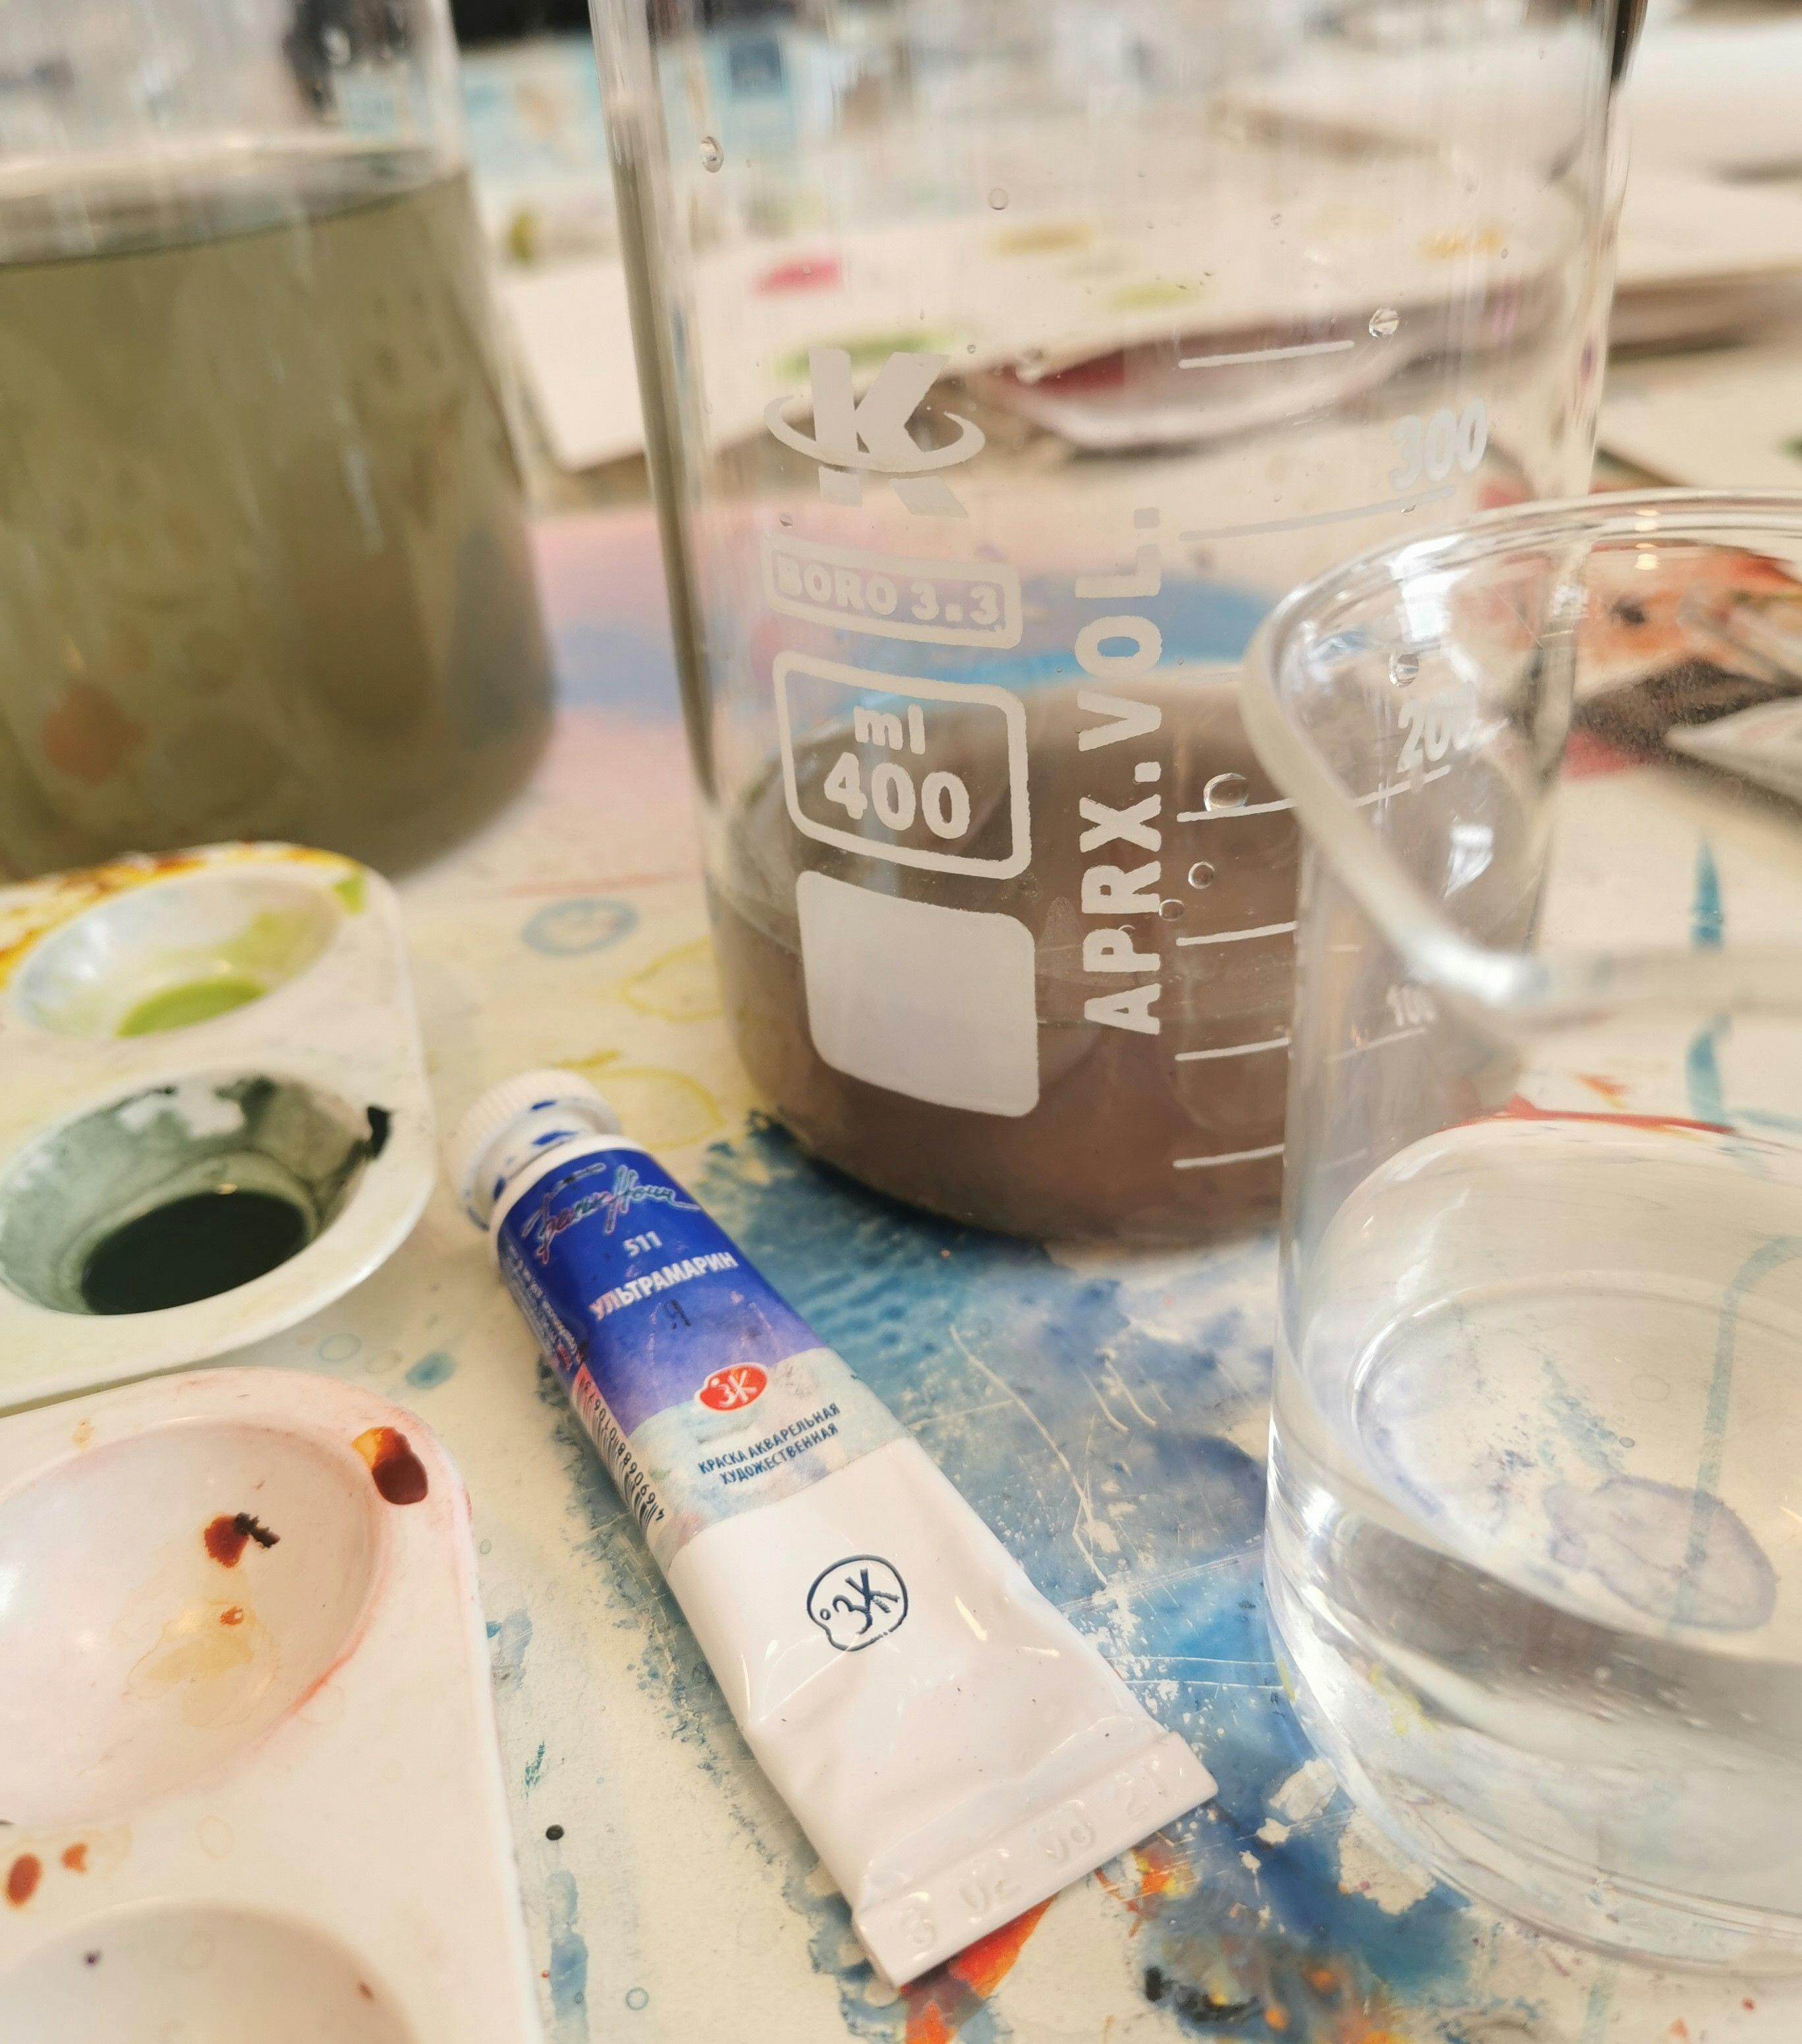 Fotografi av palett med färg, en akvarelltub och ett mätglas med brunfärgat vatten i.